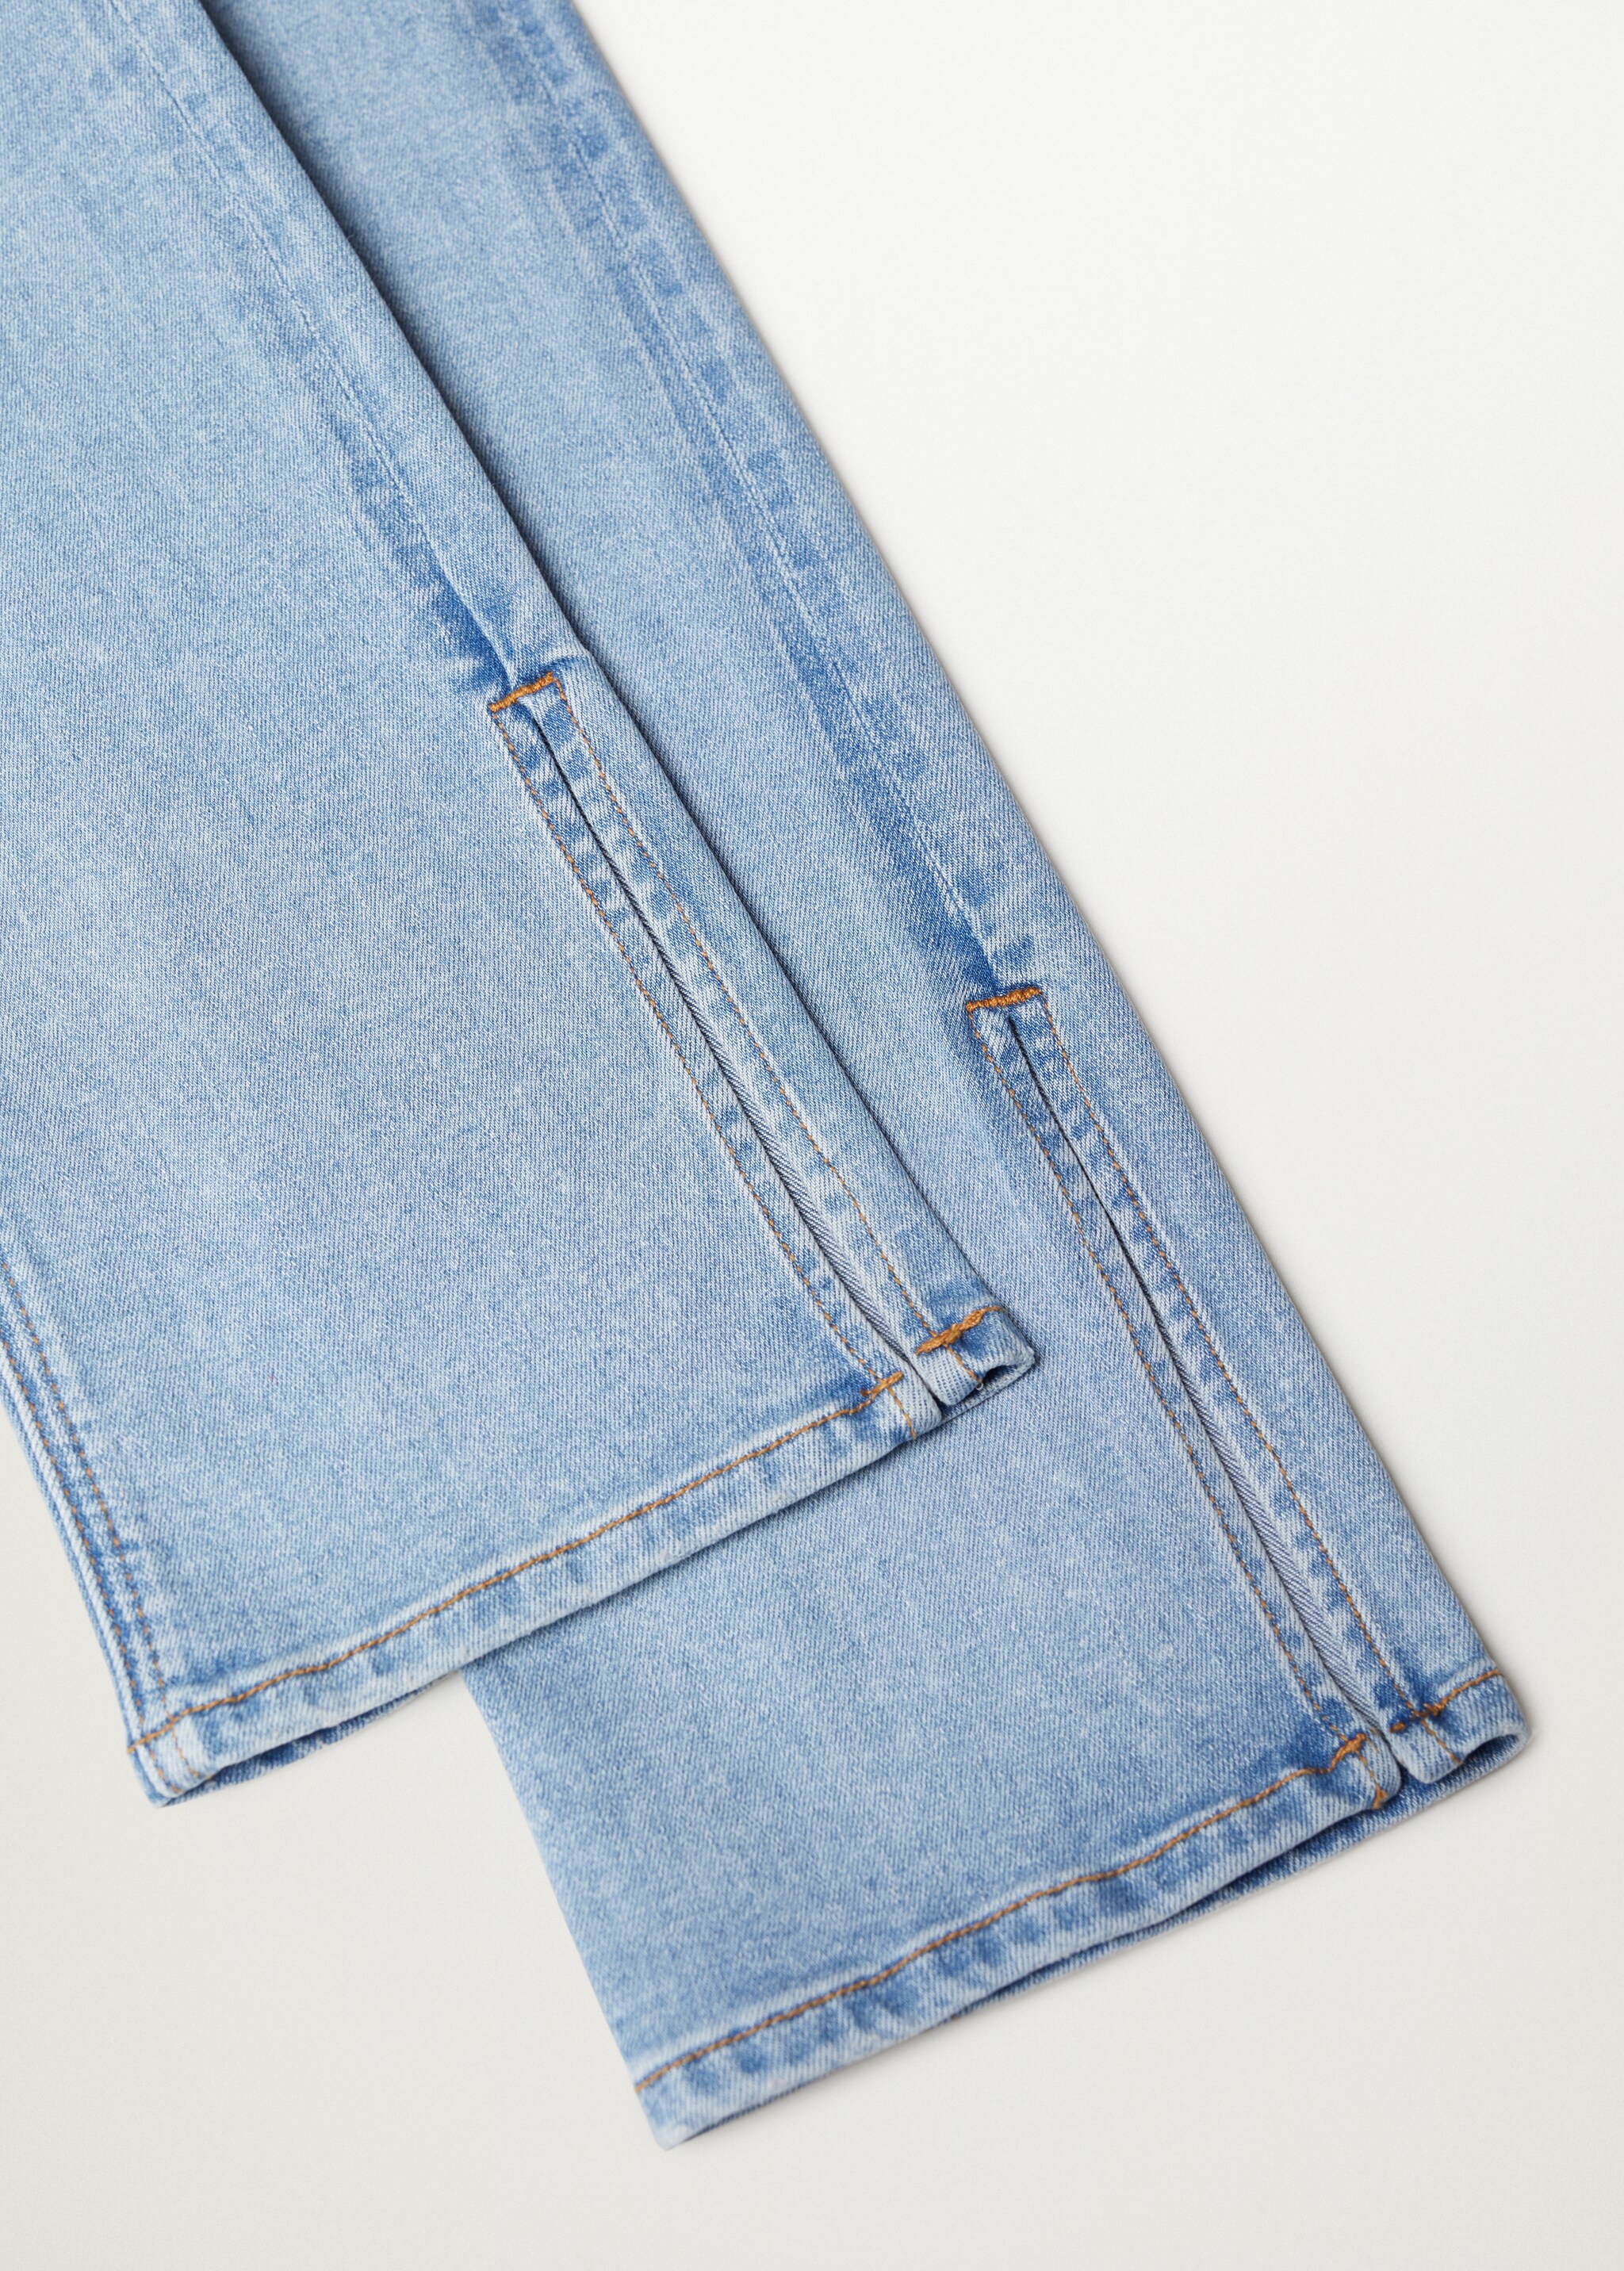 Medium Washed Jeans mit Seitenschlitzen  - Detail des Artikels 8